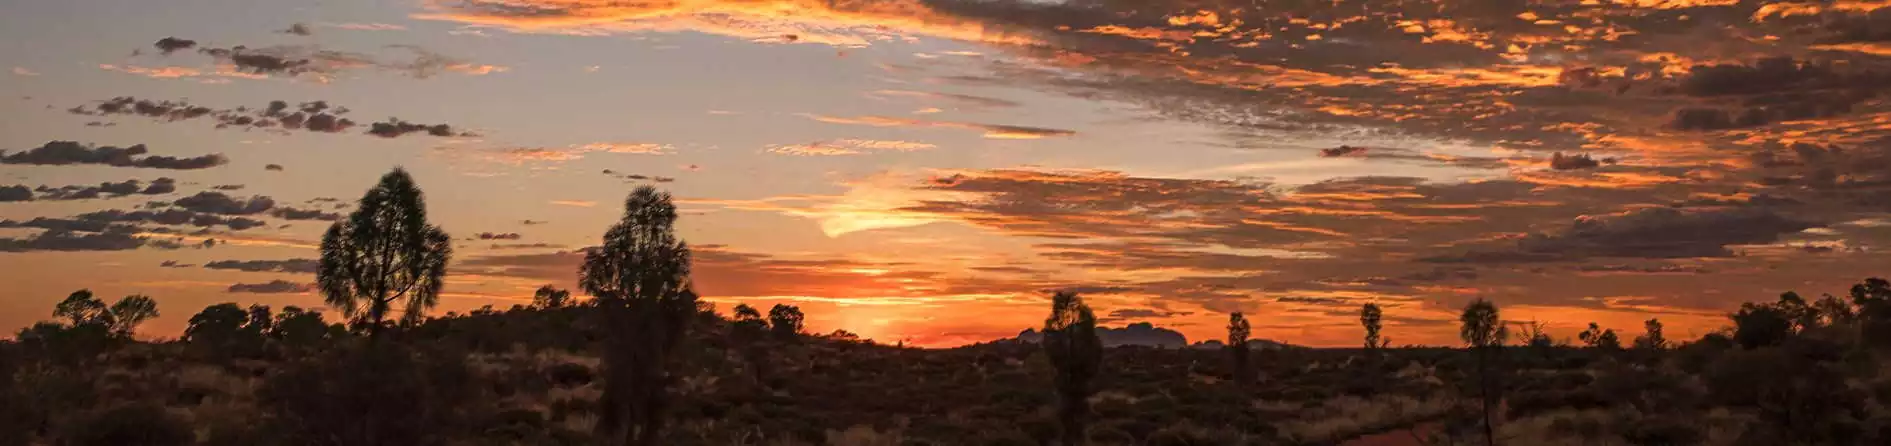 Virtual Tour of Uluru